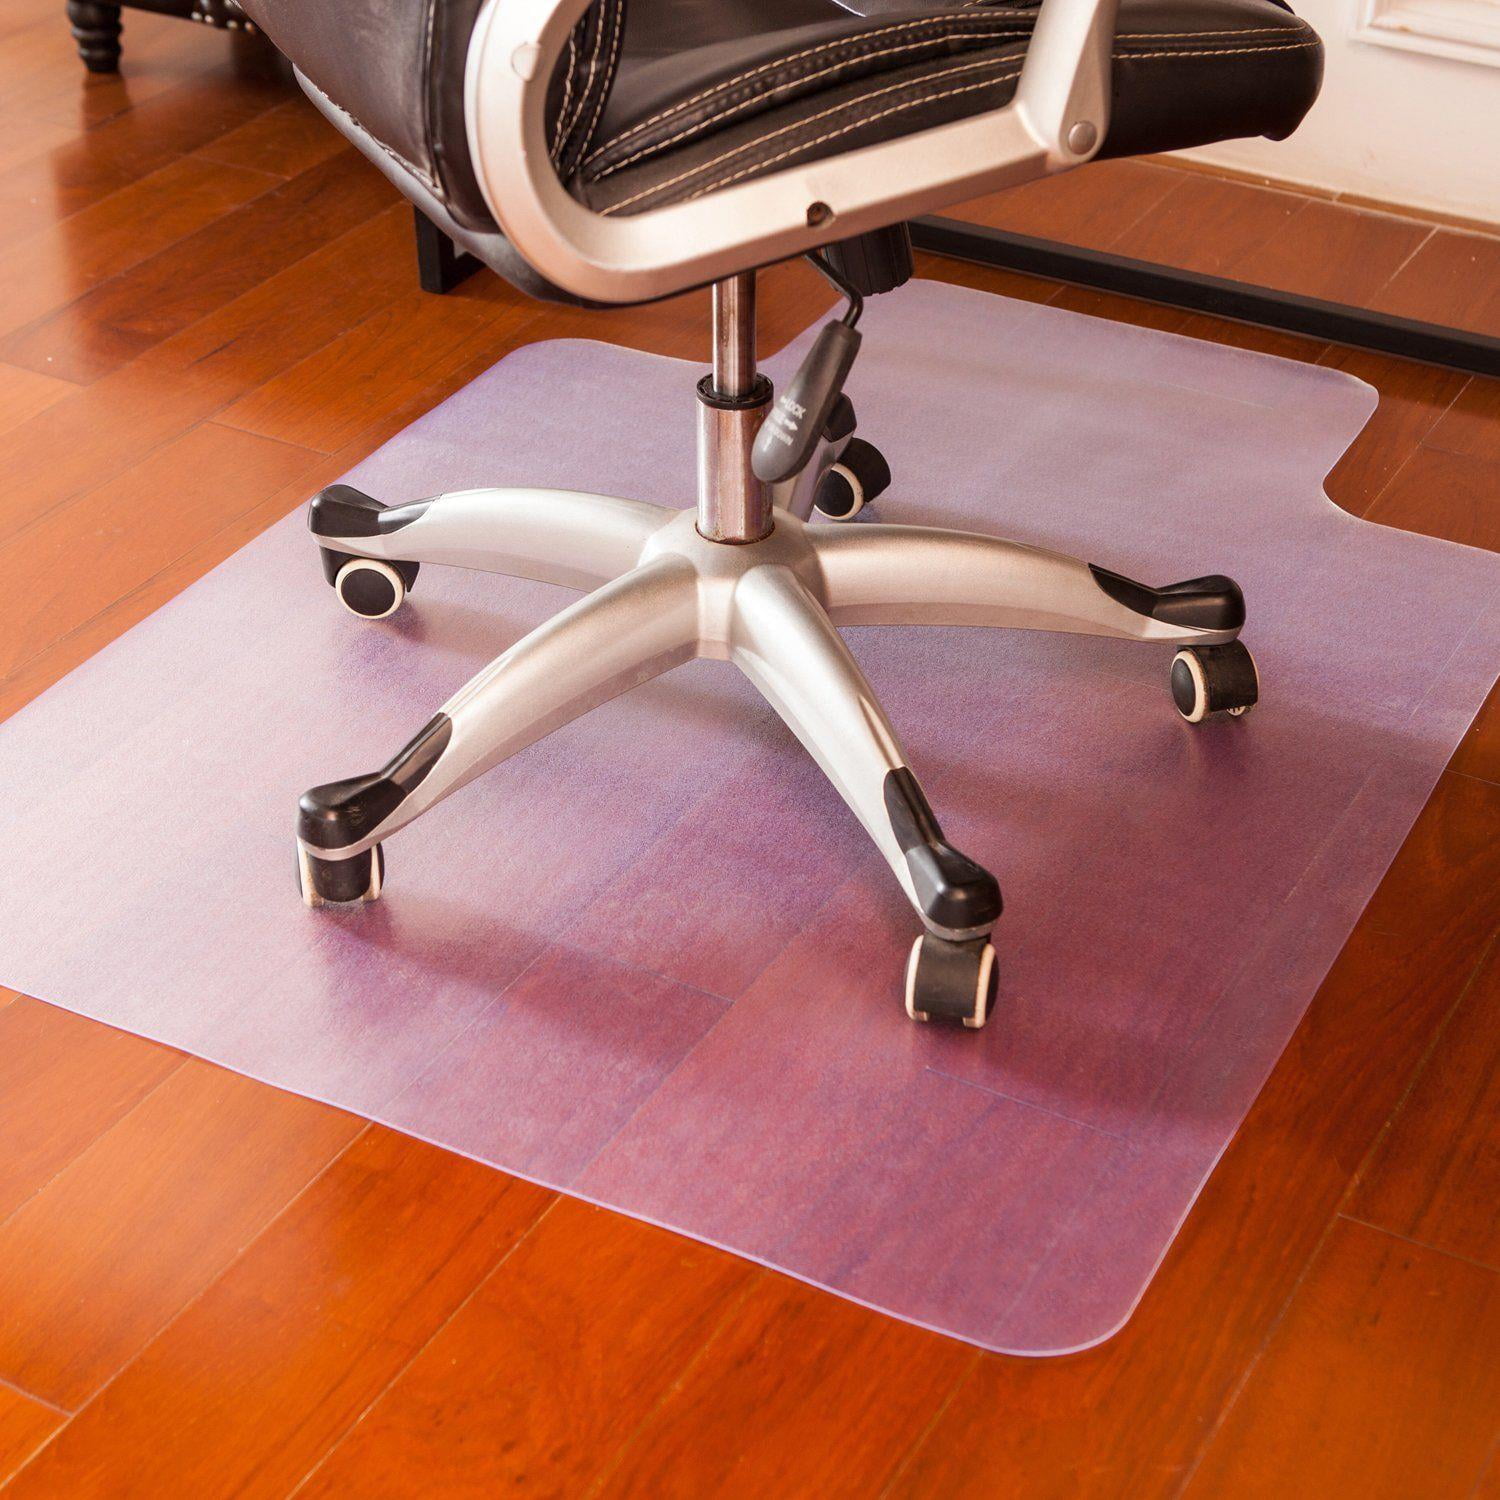 Ktaxon Office Chair Mat For Hardwood, Best Non Slip Rugs For Hardwood Floors